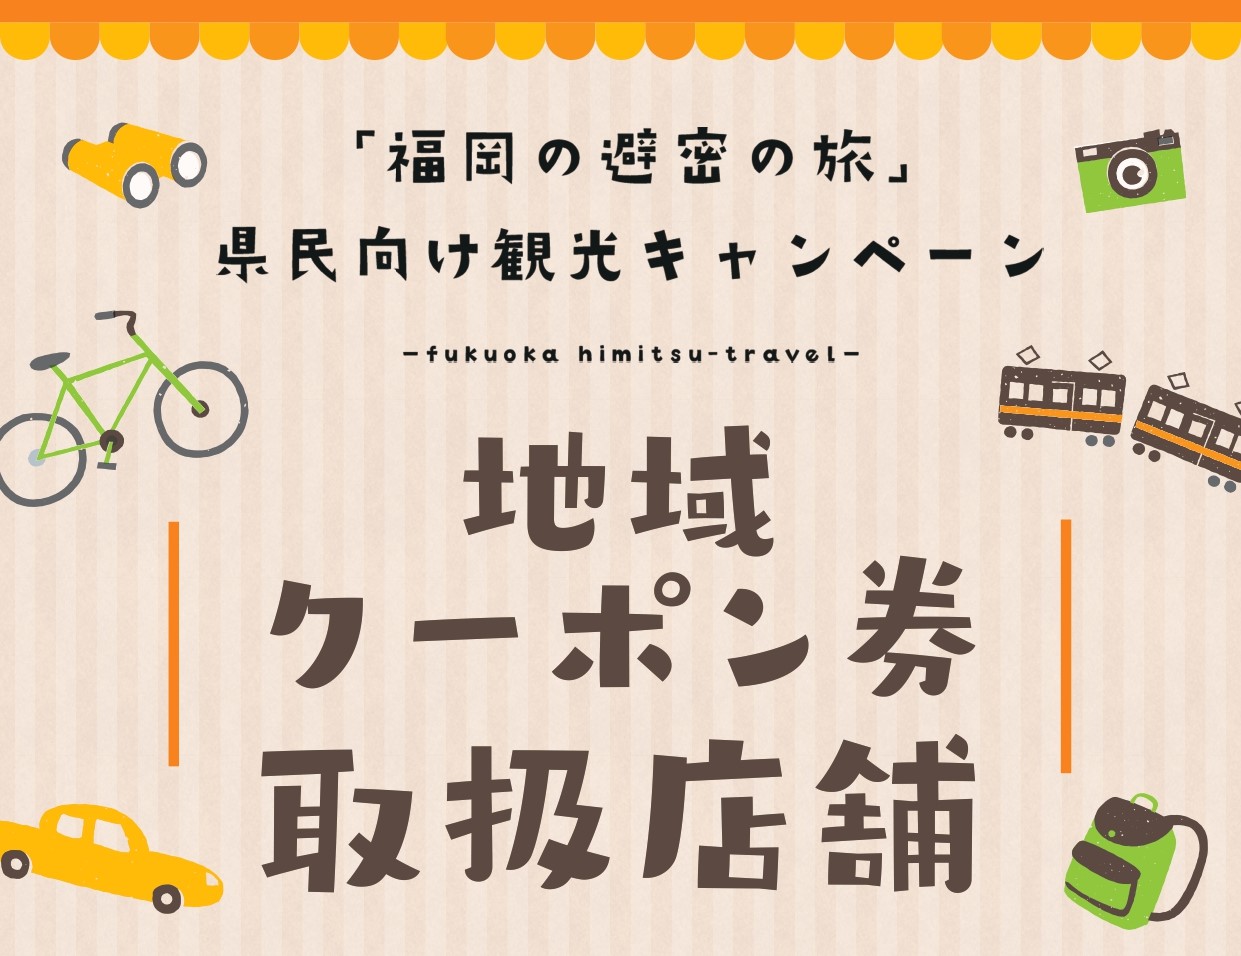 「福岡の避密の旅」地域共通クーポン券利用を再開しました。